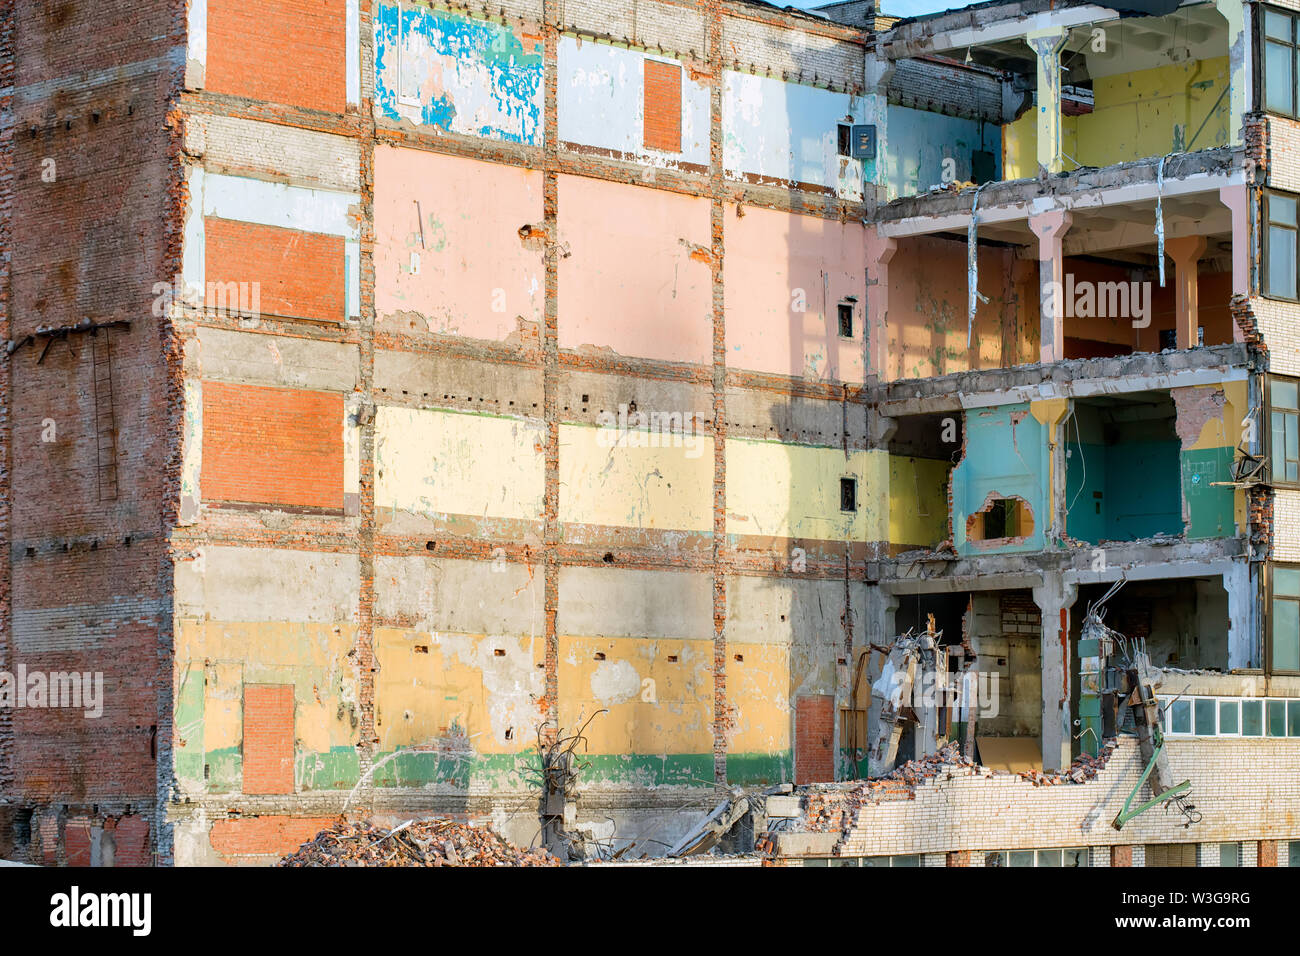 Bâtiment industriel détruit en partie avec des murs colorés. Thème la démolition ou la destruction Banque D'Images